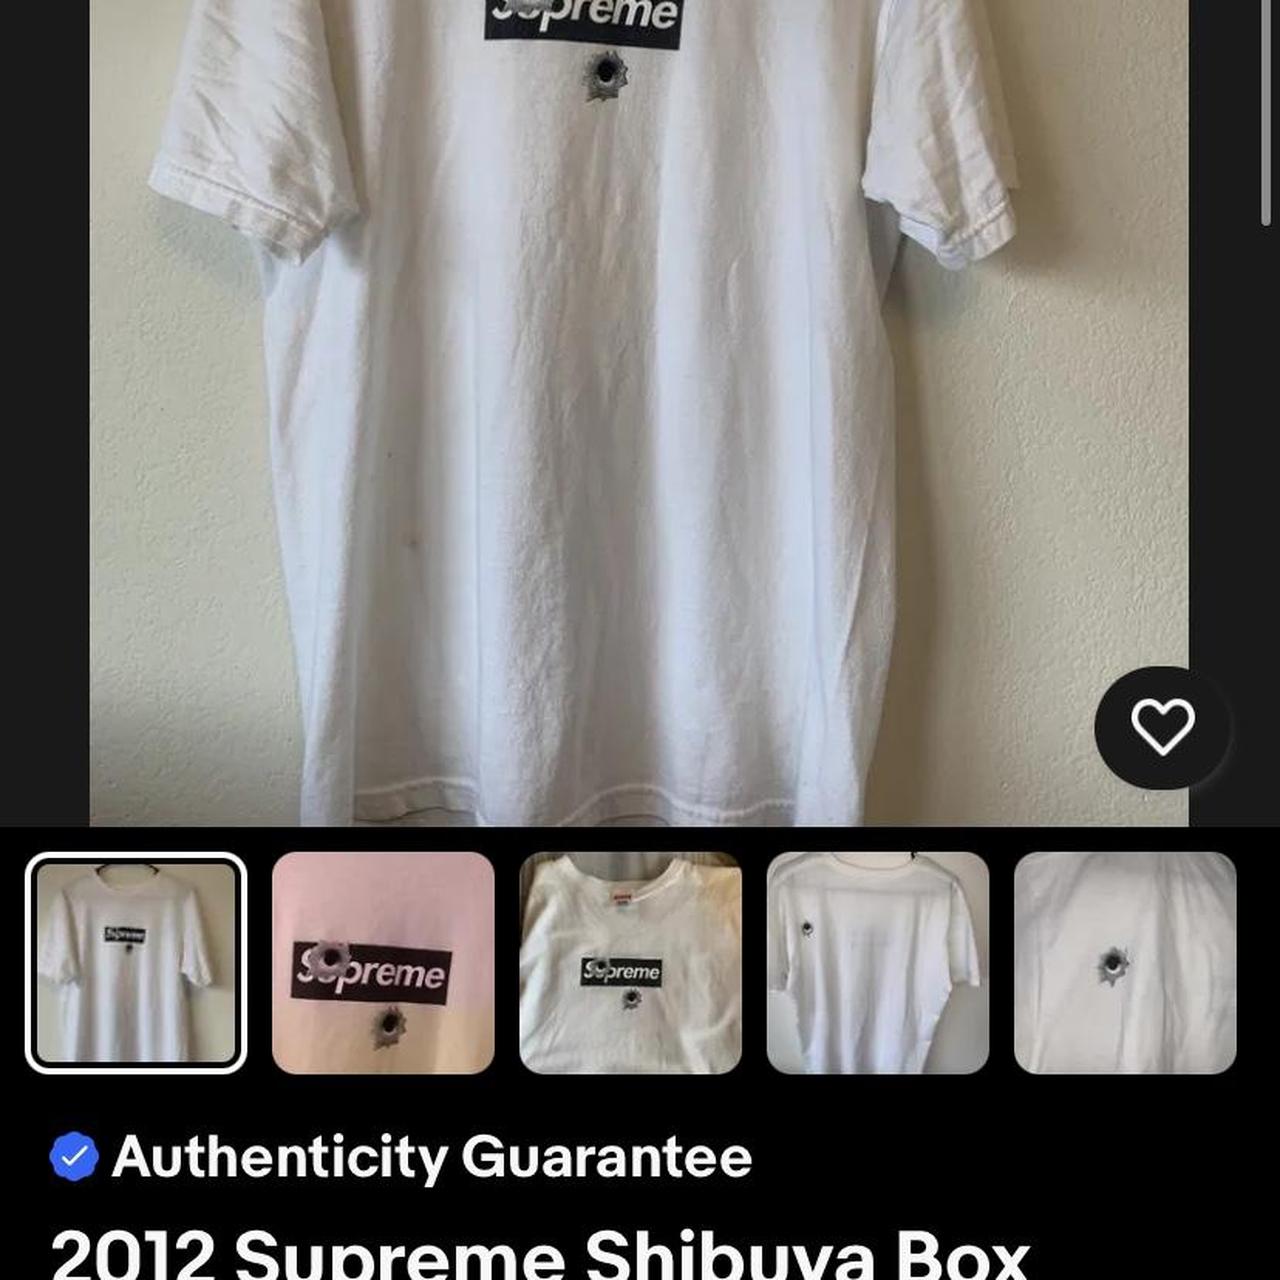 Supreme Men's T-Shirt - White - M